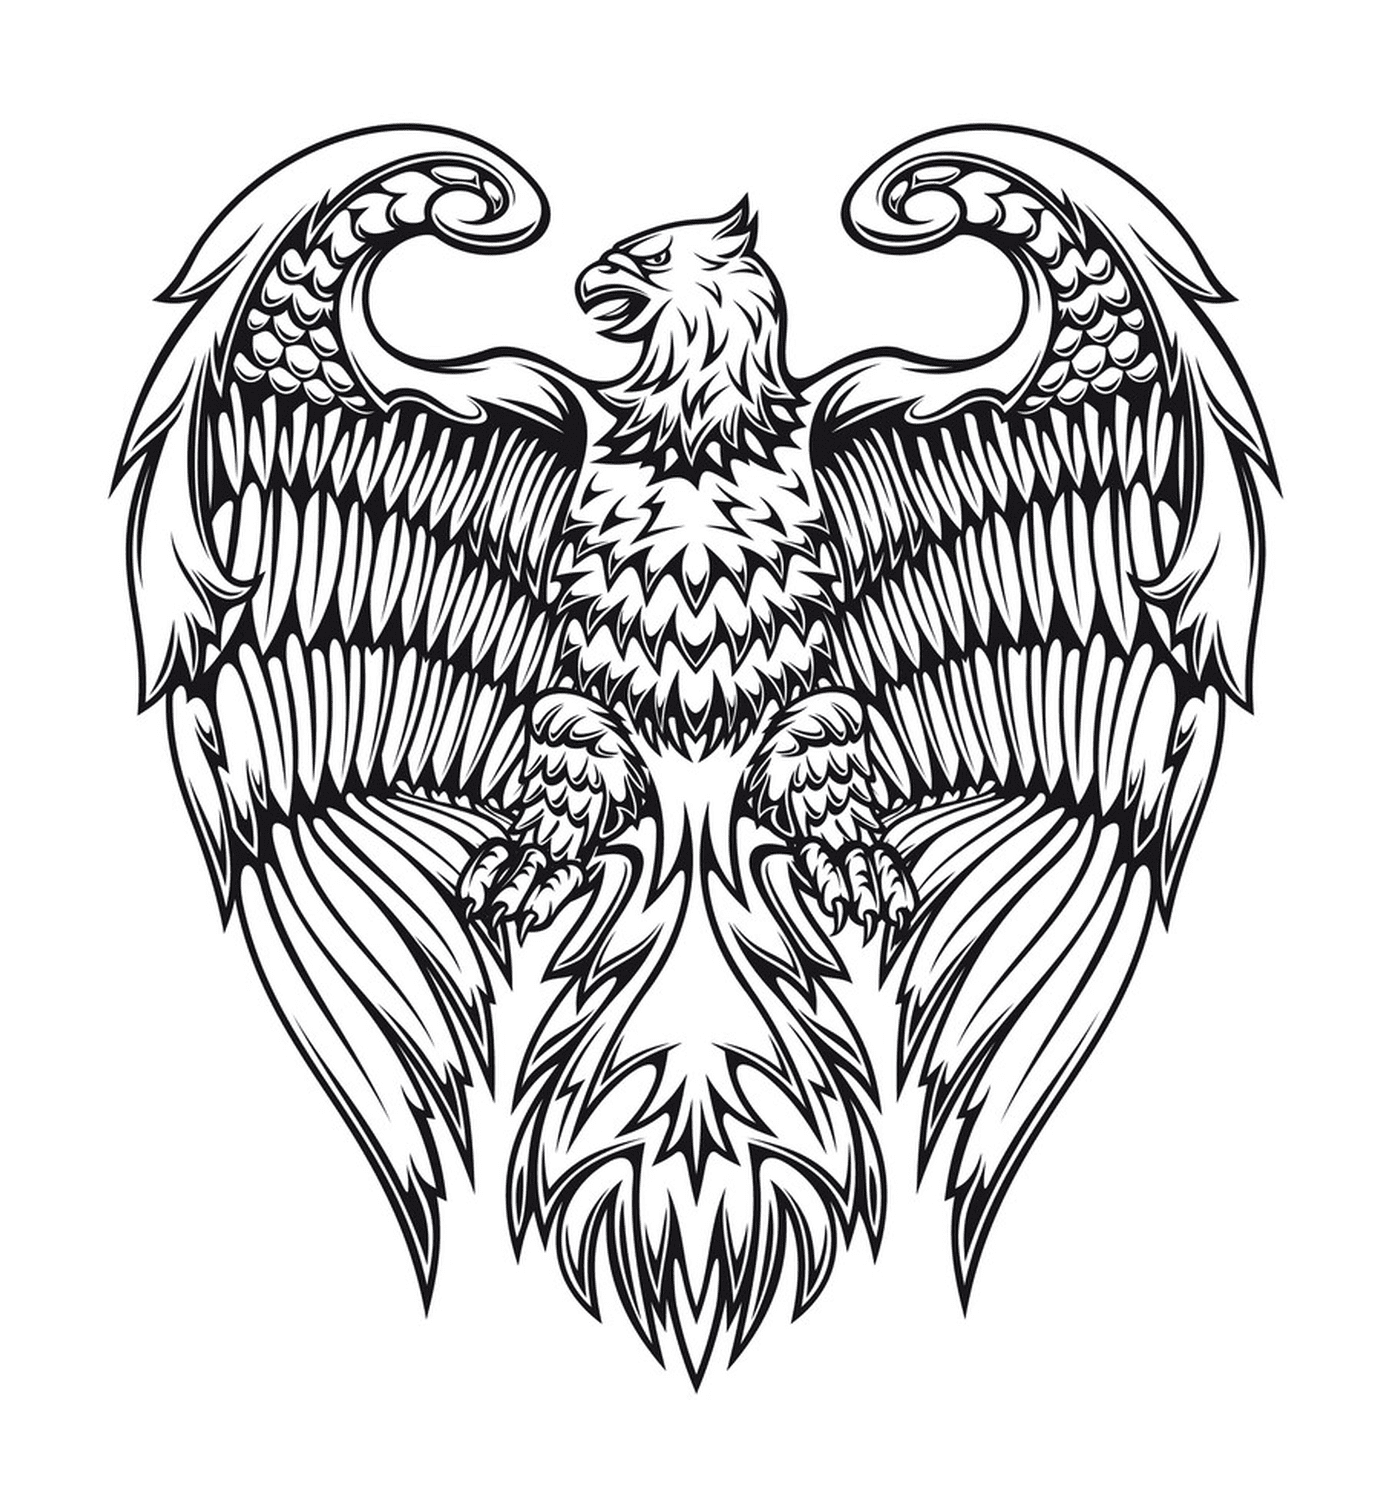  Königlicher Adler mit verschiedenen Mustern 